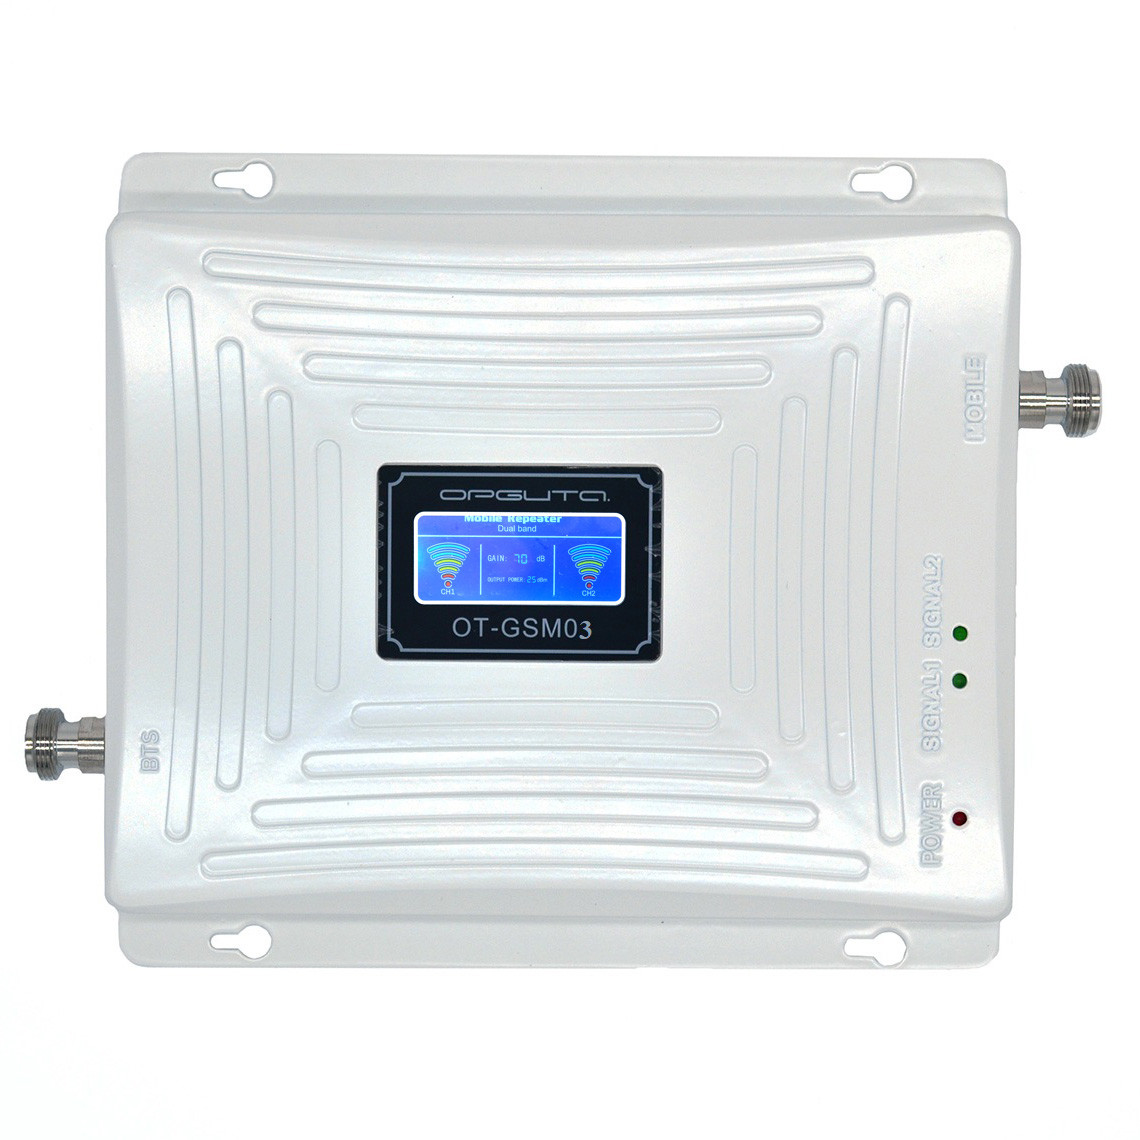 Орбита OT-GSM03 (2G-900/3G-900/3G-2100) усилитель GSM репитер